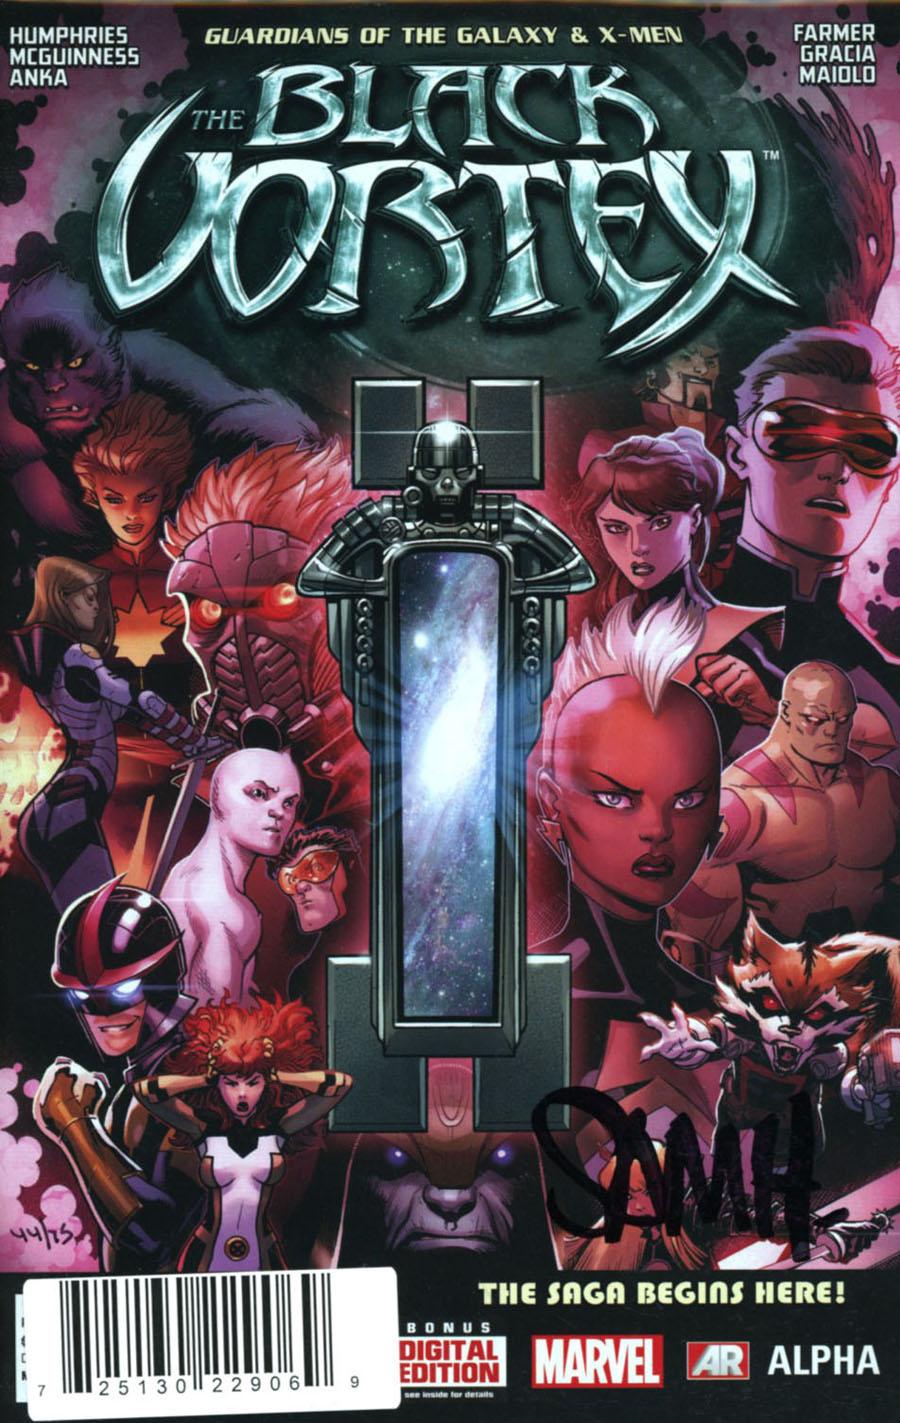 Guardians of the Galaxy & X-Men Black Vortex Alpha Vol. 1 #1